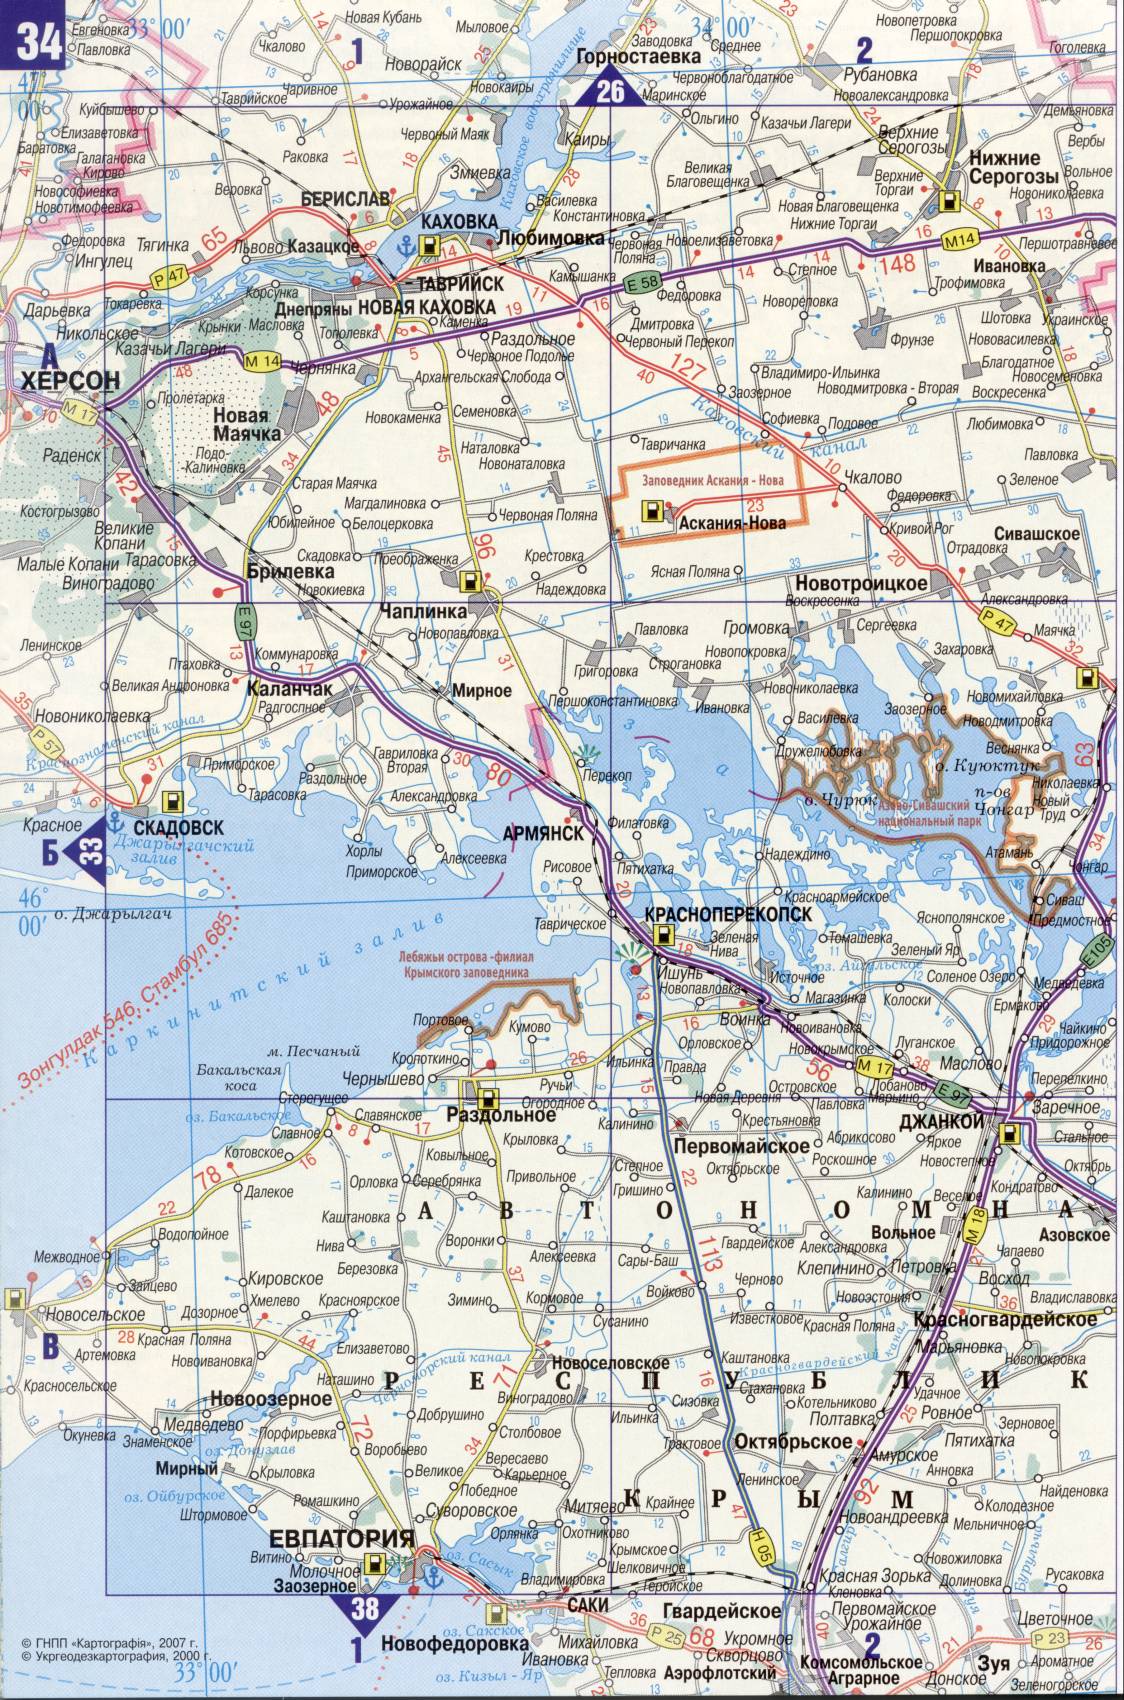 Karte der Ukraine. Detaillierte Straßenkarte der Ukraine avtomobilnog Satin. kostenlos herunterladen, G3